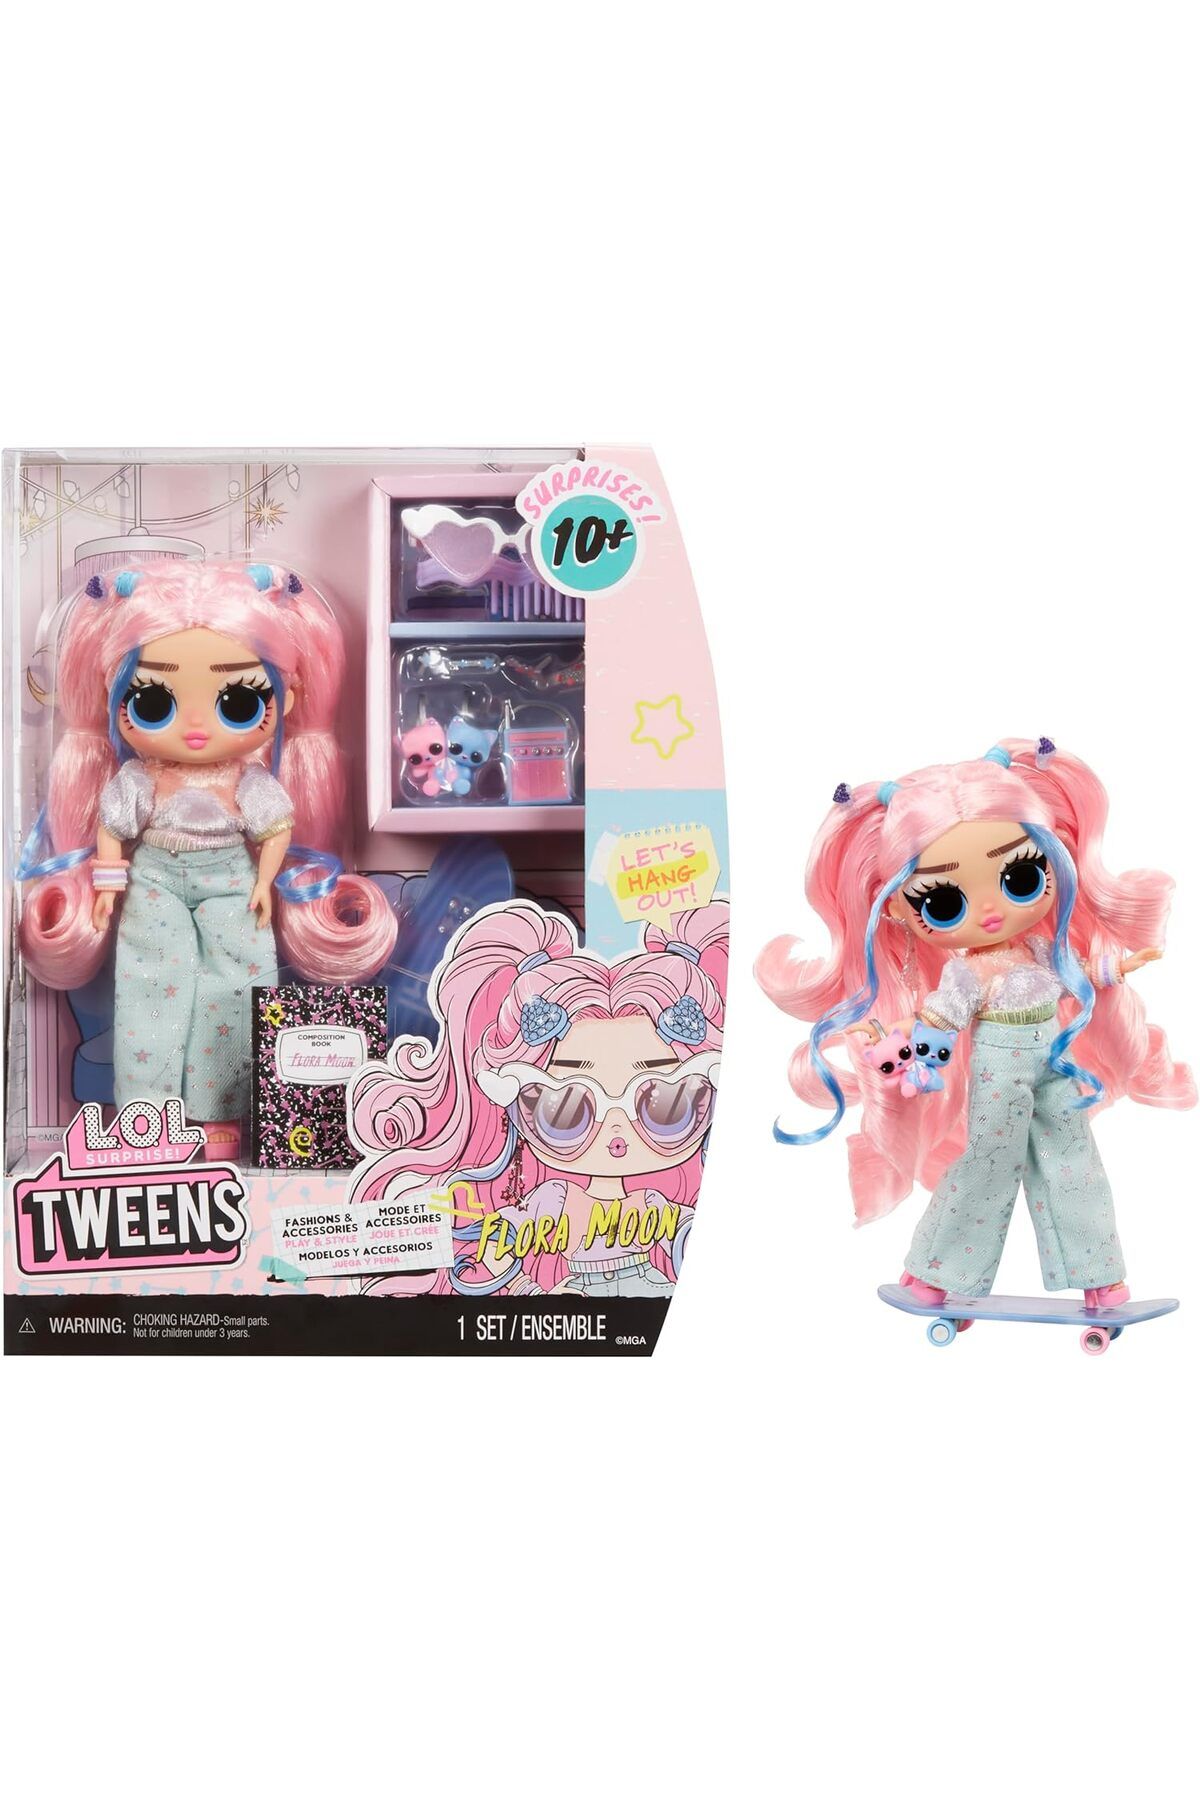 Barbie LOL Sürpriz Tweens Moda Bebeği Flora Moon, 10'dan Fazla Sürpriz ve Muhteşem Aksesuarlarla